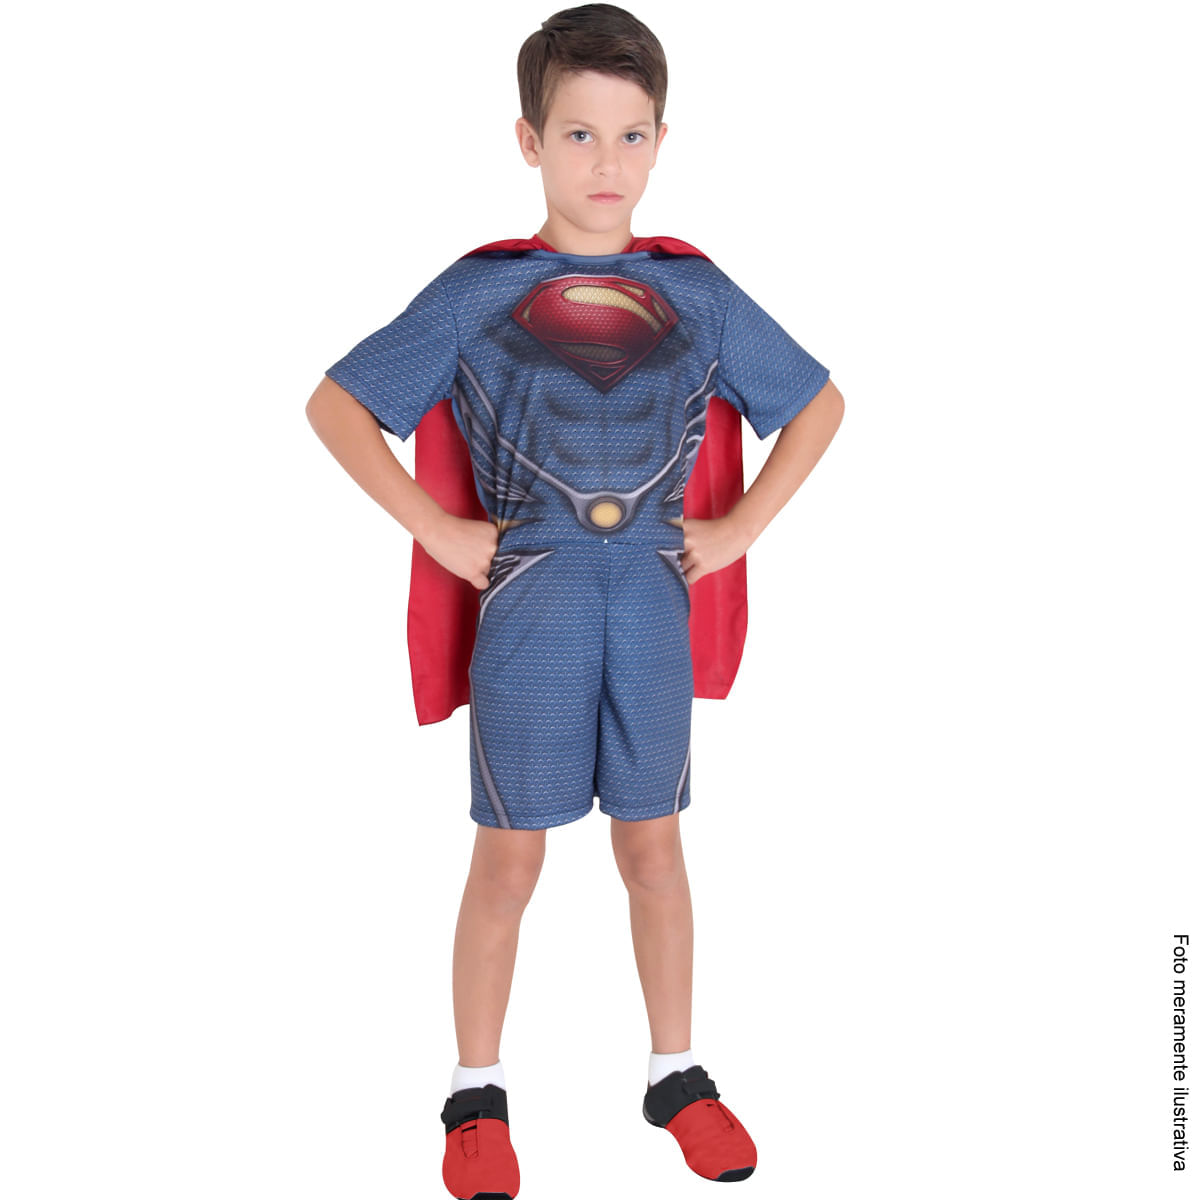 Fantasia Superman Infantil Curto - O Homem de Aço P / UNICA